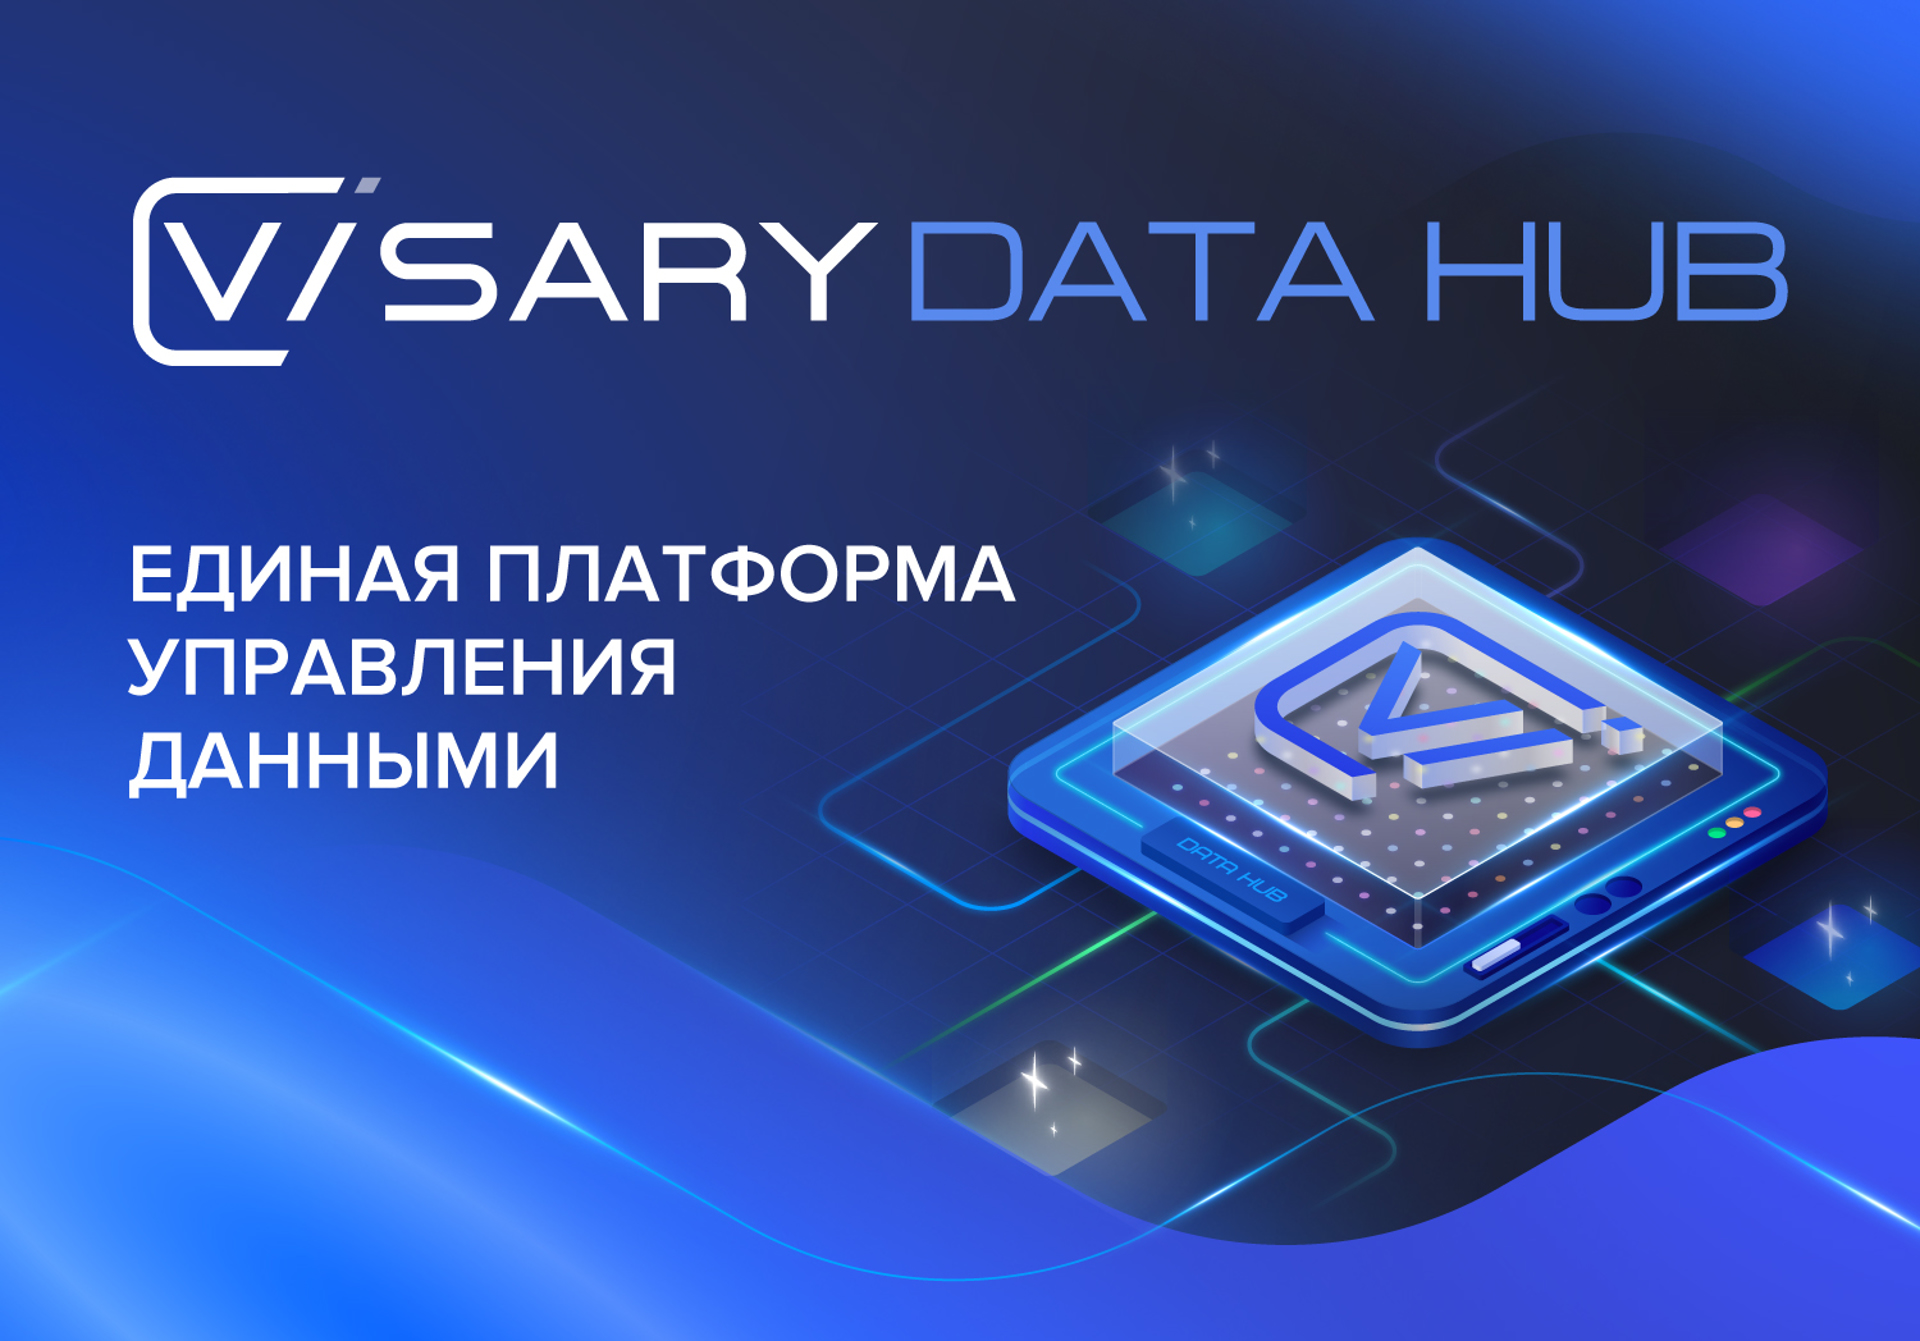 Visary Data Hub